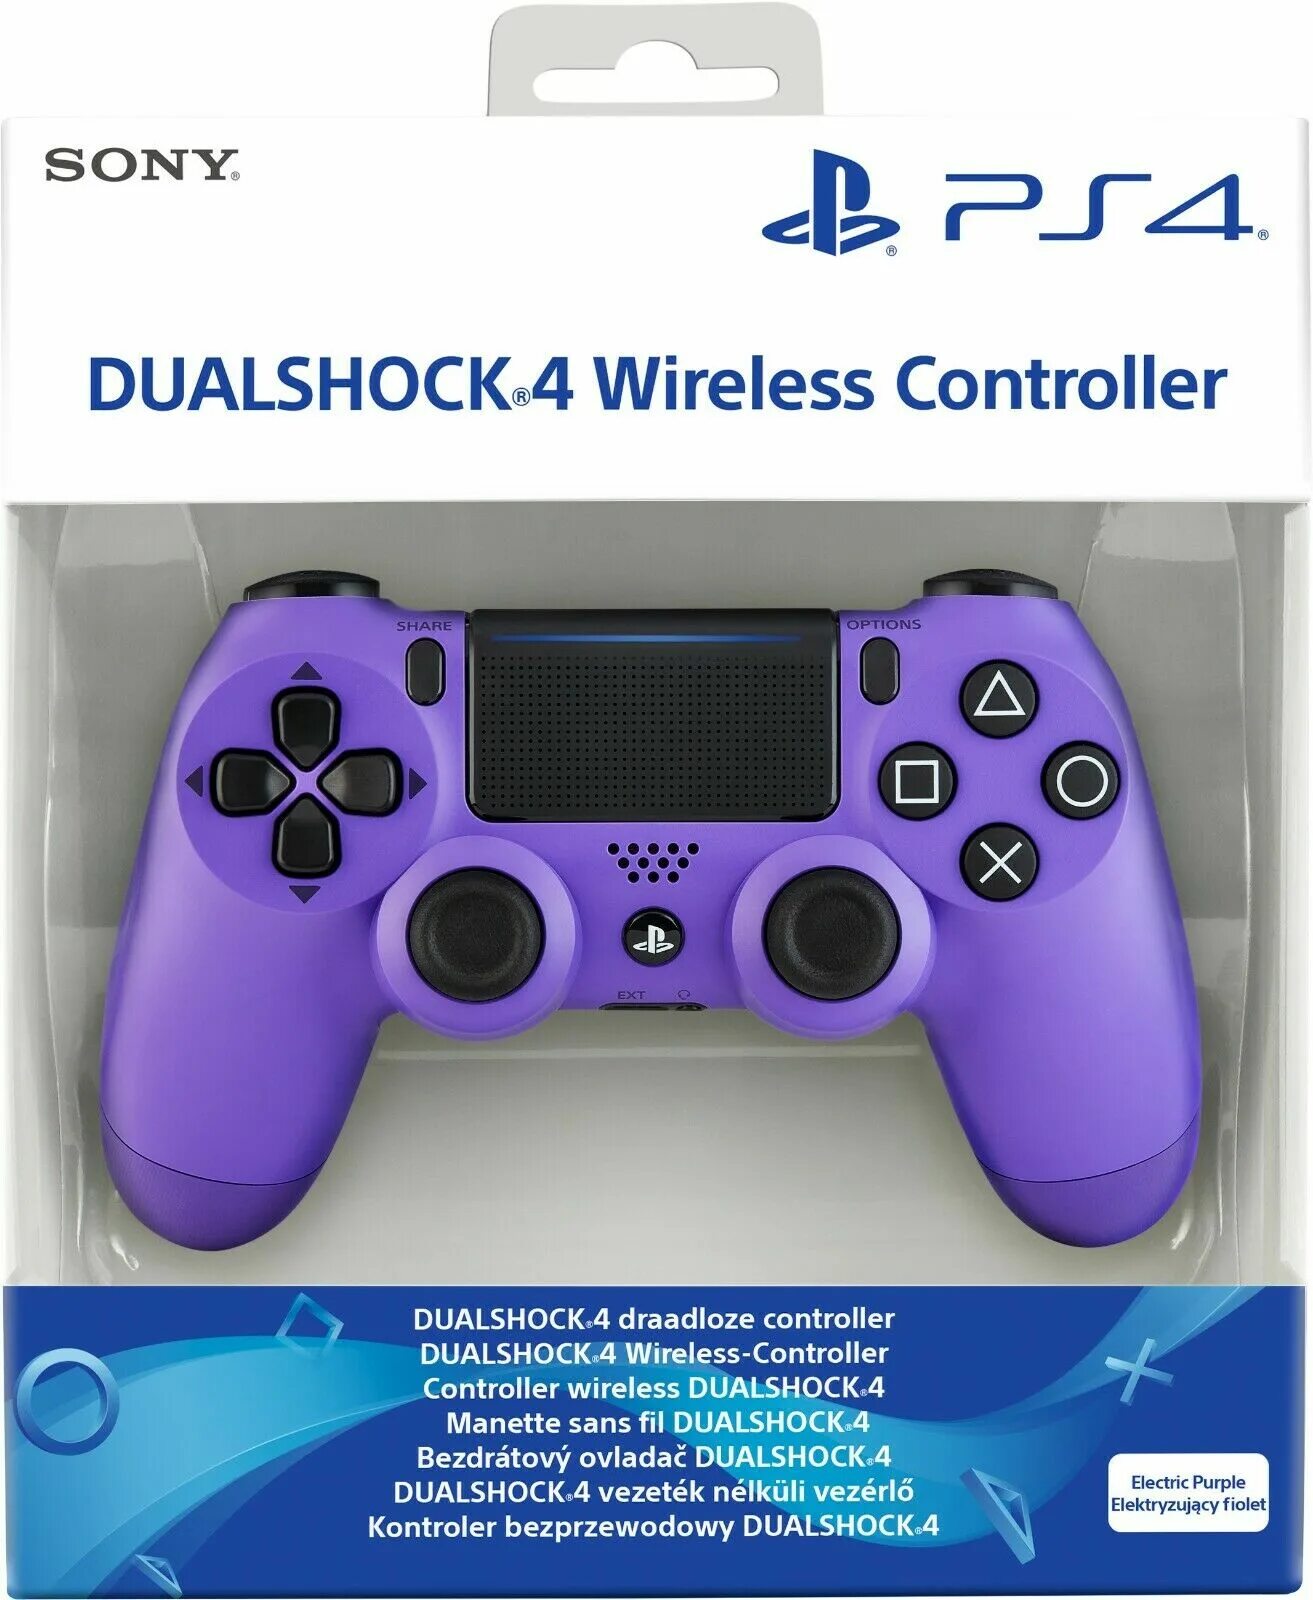 Фиолетовый джойстик. Sony PLAYSTATION Controller Dualshock 4. Джойстик Dualshock 4 v2. Dualshock 4 v2 Electric Purple. Джойстик Sony ps4.